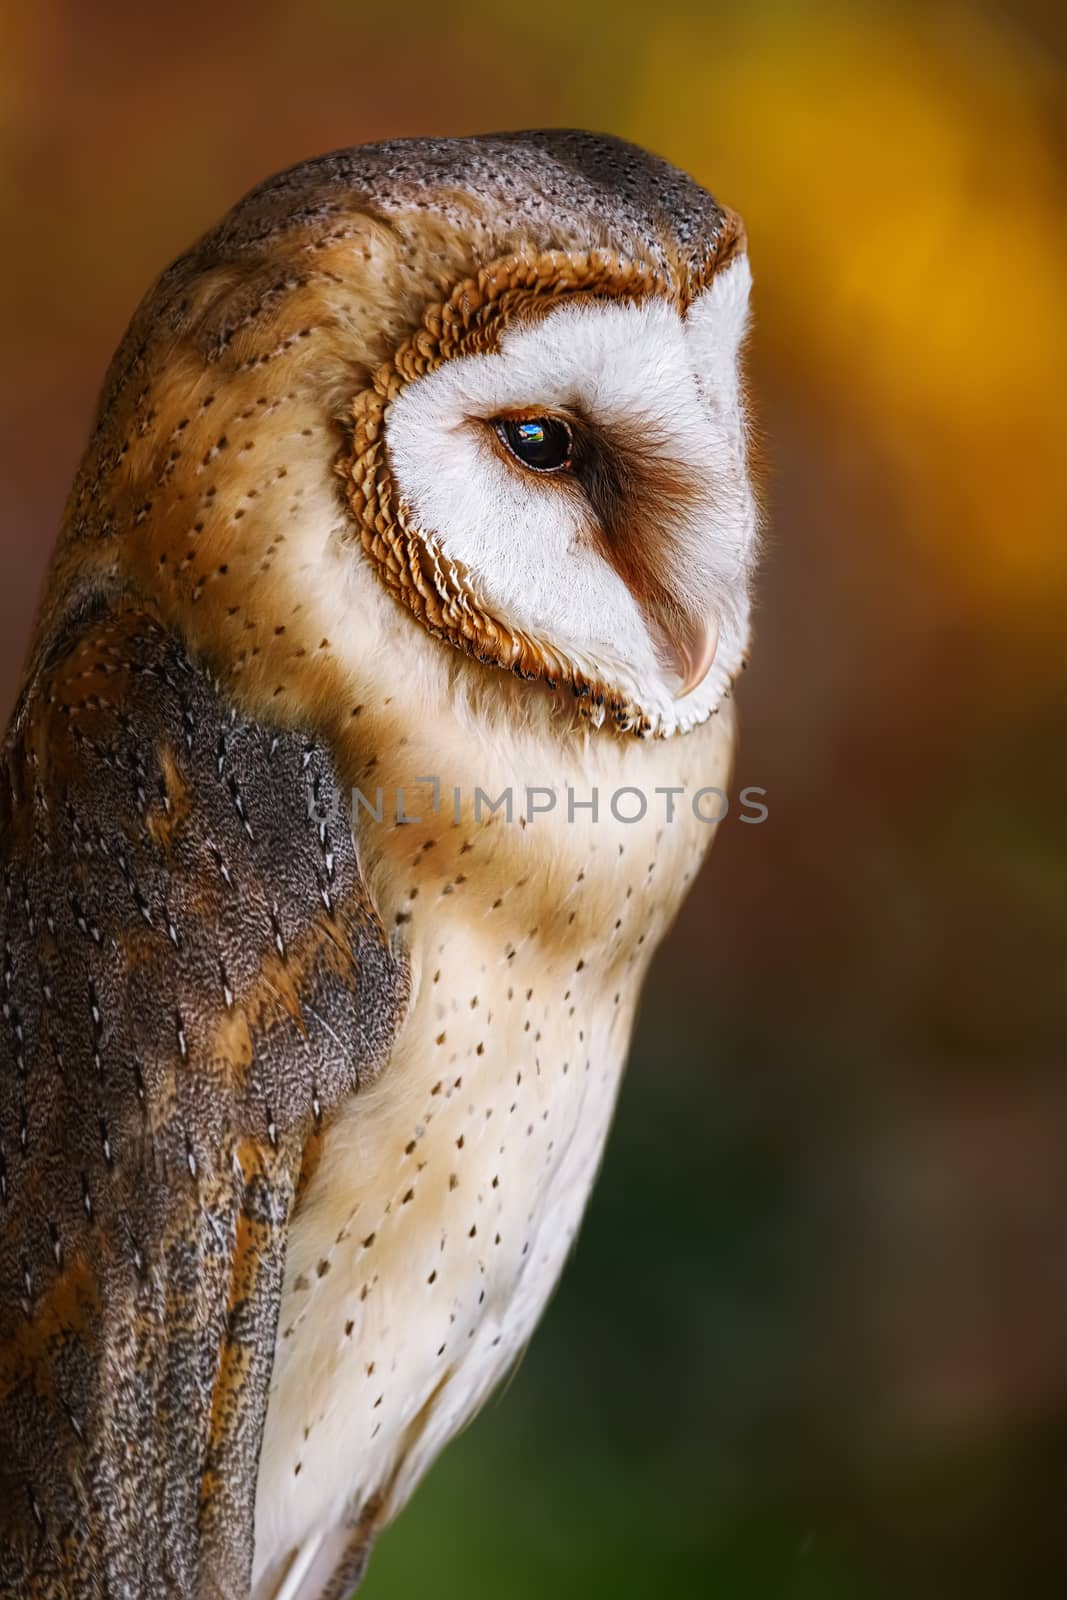 Common barn owl (Tyto alba) by SNR